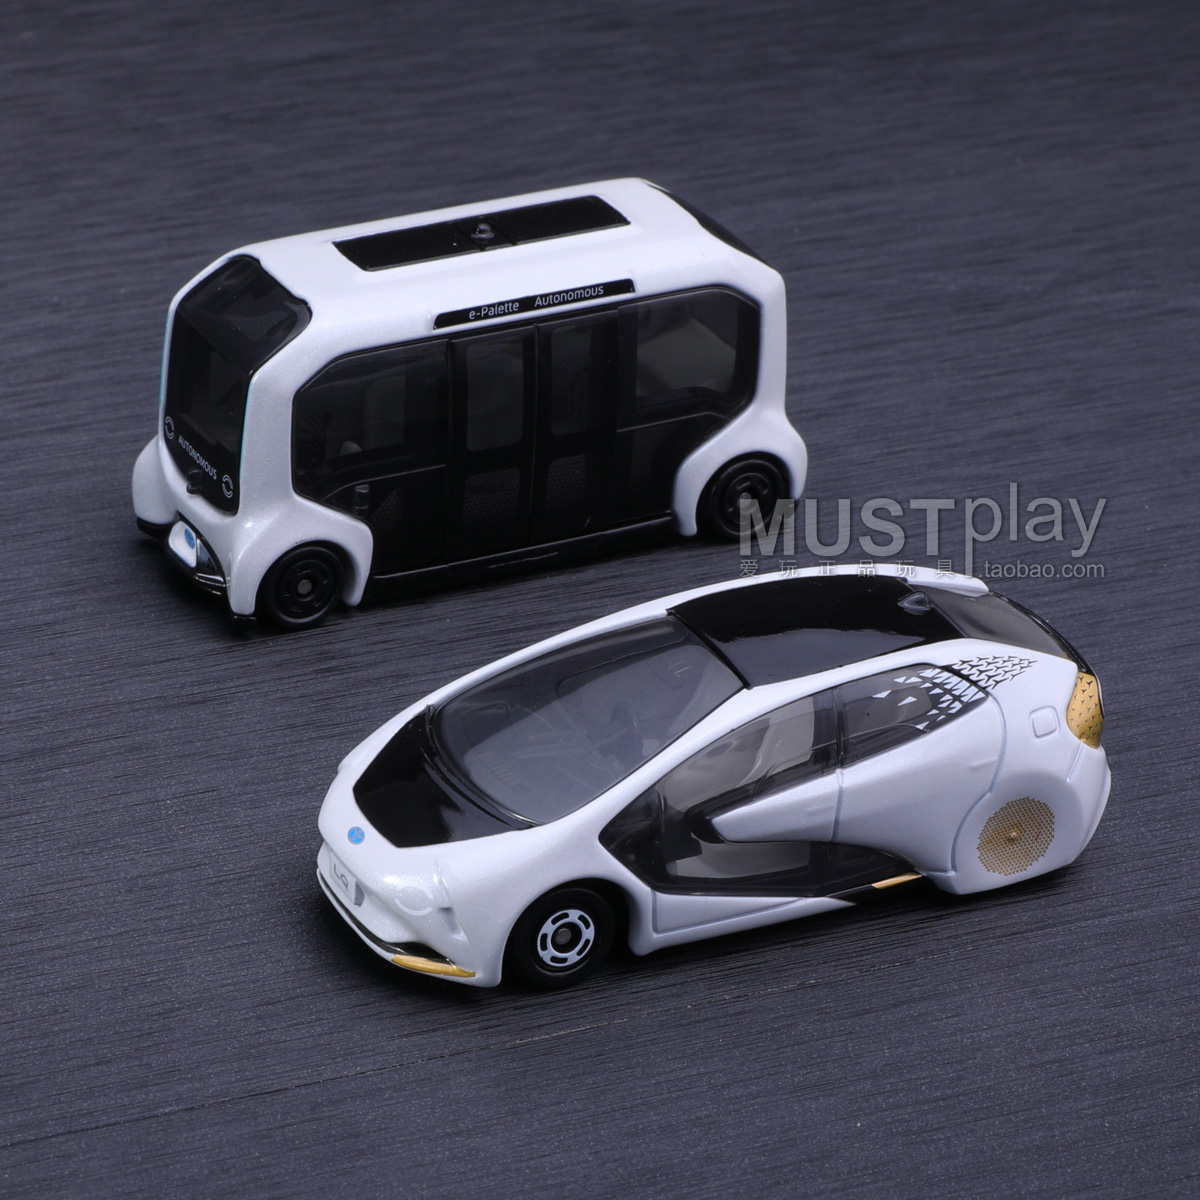 Tomy多美卡丰田LQ自动驾驶车电动概念车合金车模型玩具